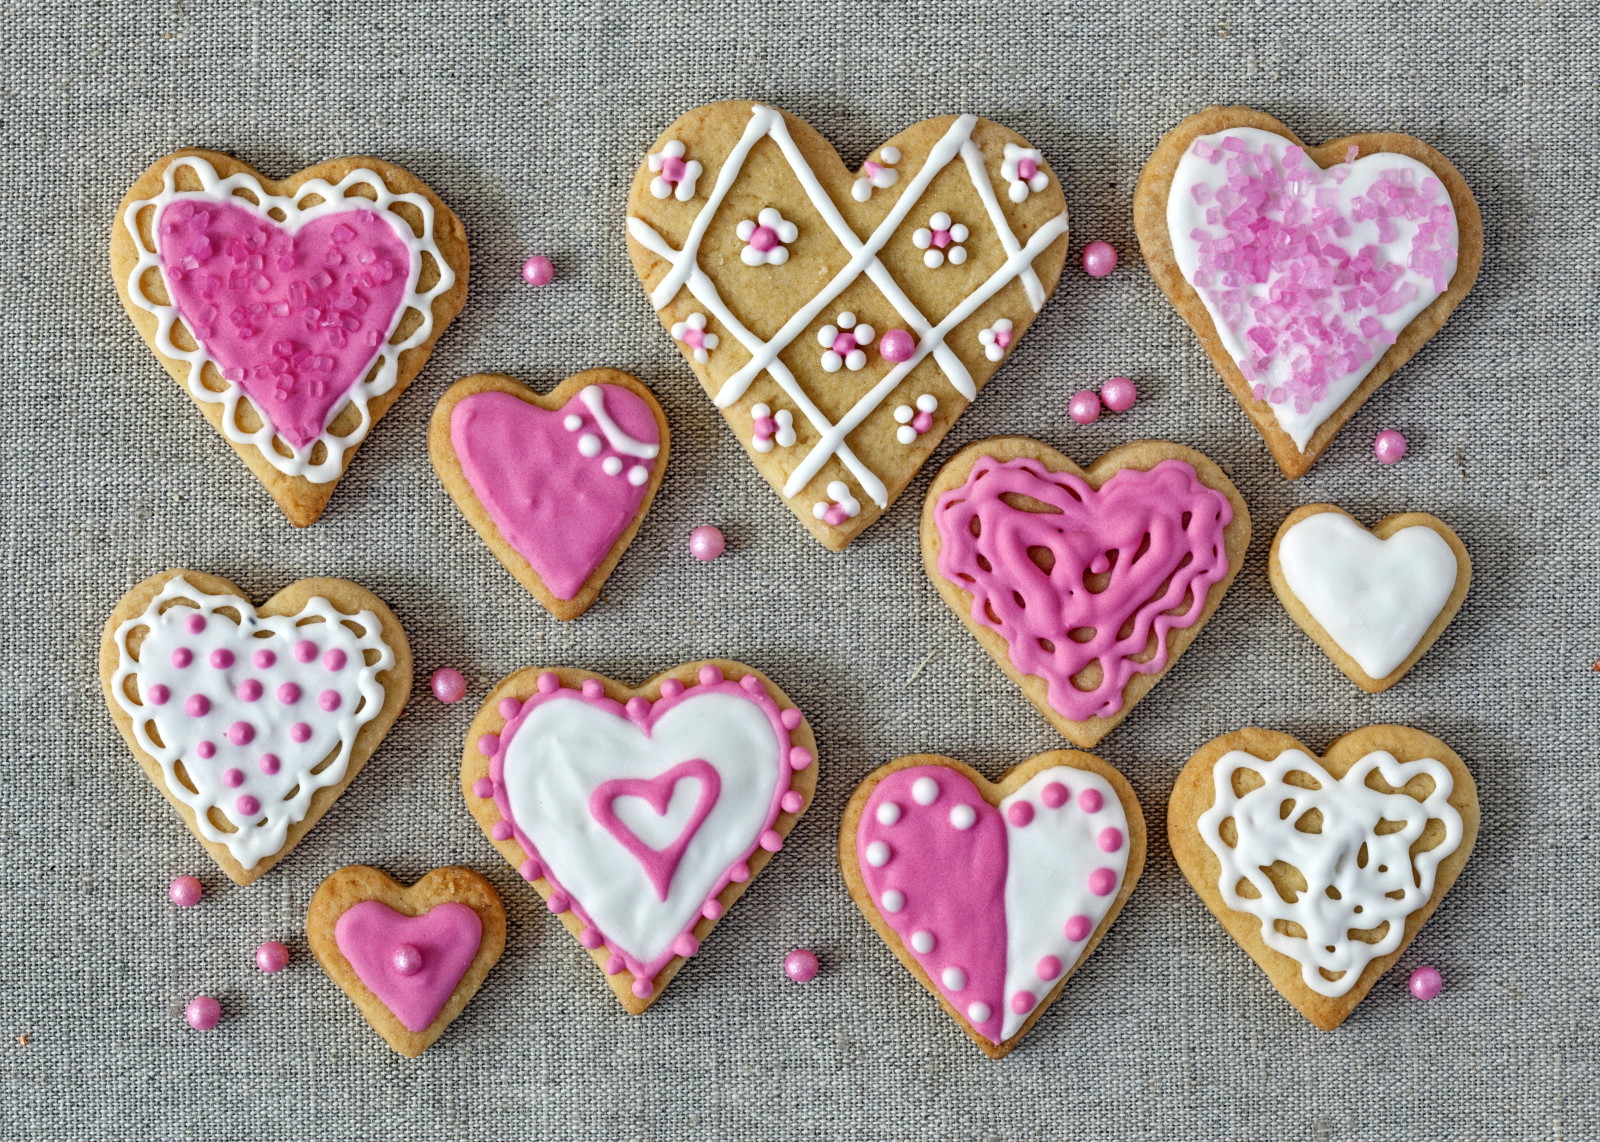 假日, 爱, 心, 粉, 饼干, 蛋糕, 釉